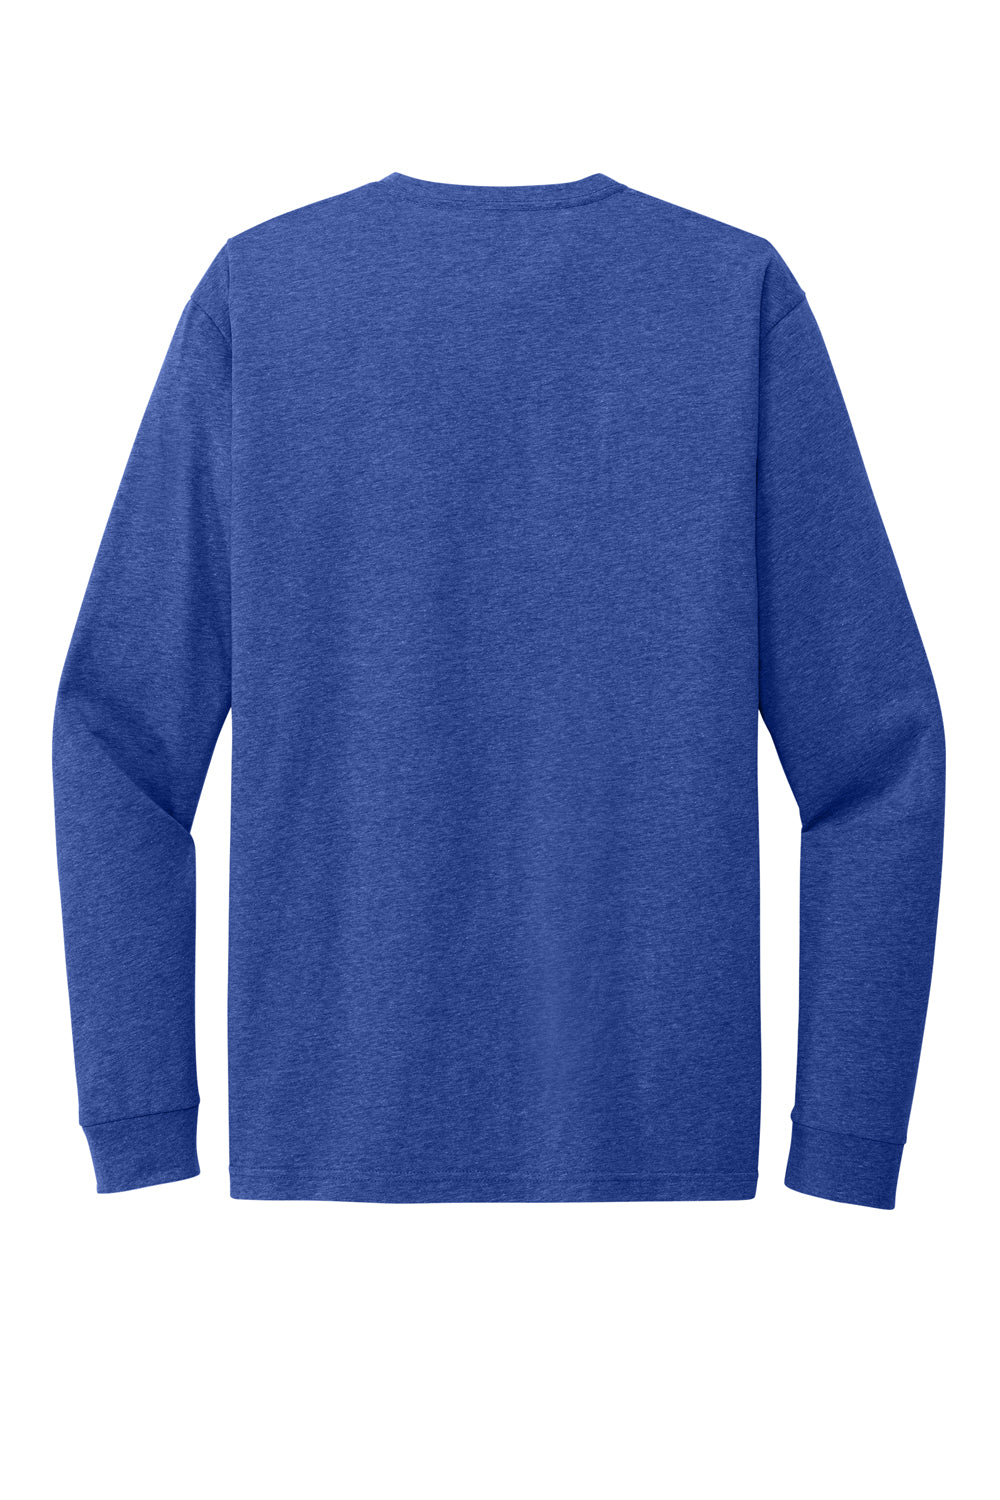 Next Level NL6211 Mens CVC Long Sleeve Crewneck T-Shirt Royal Blue Flat Back